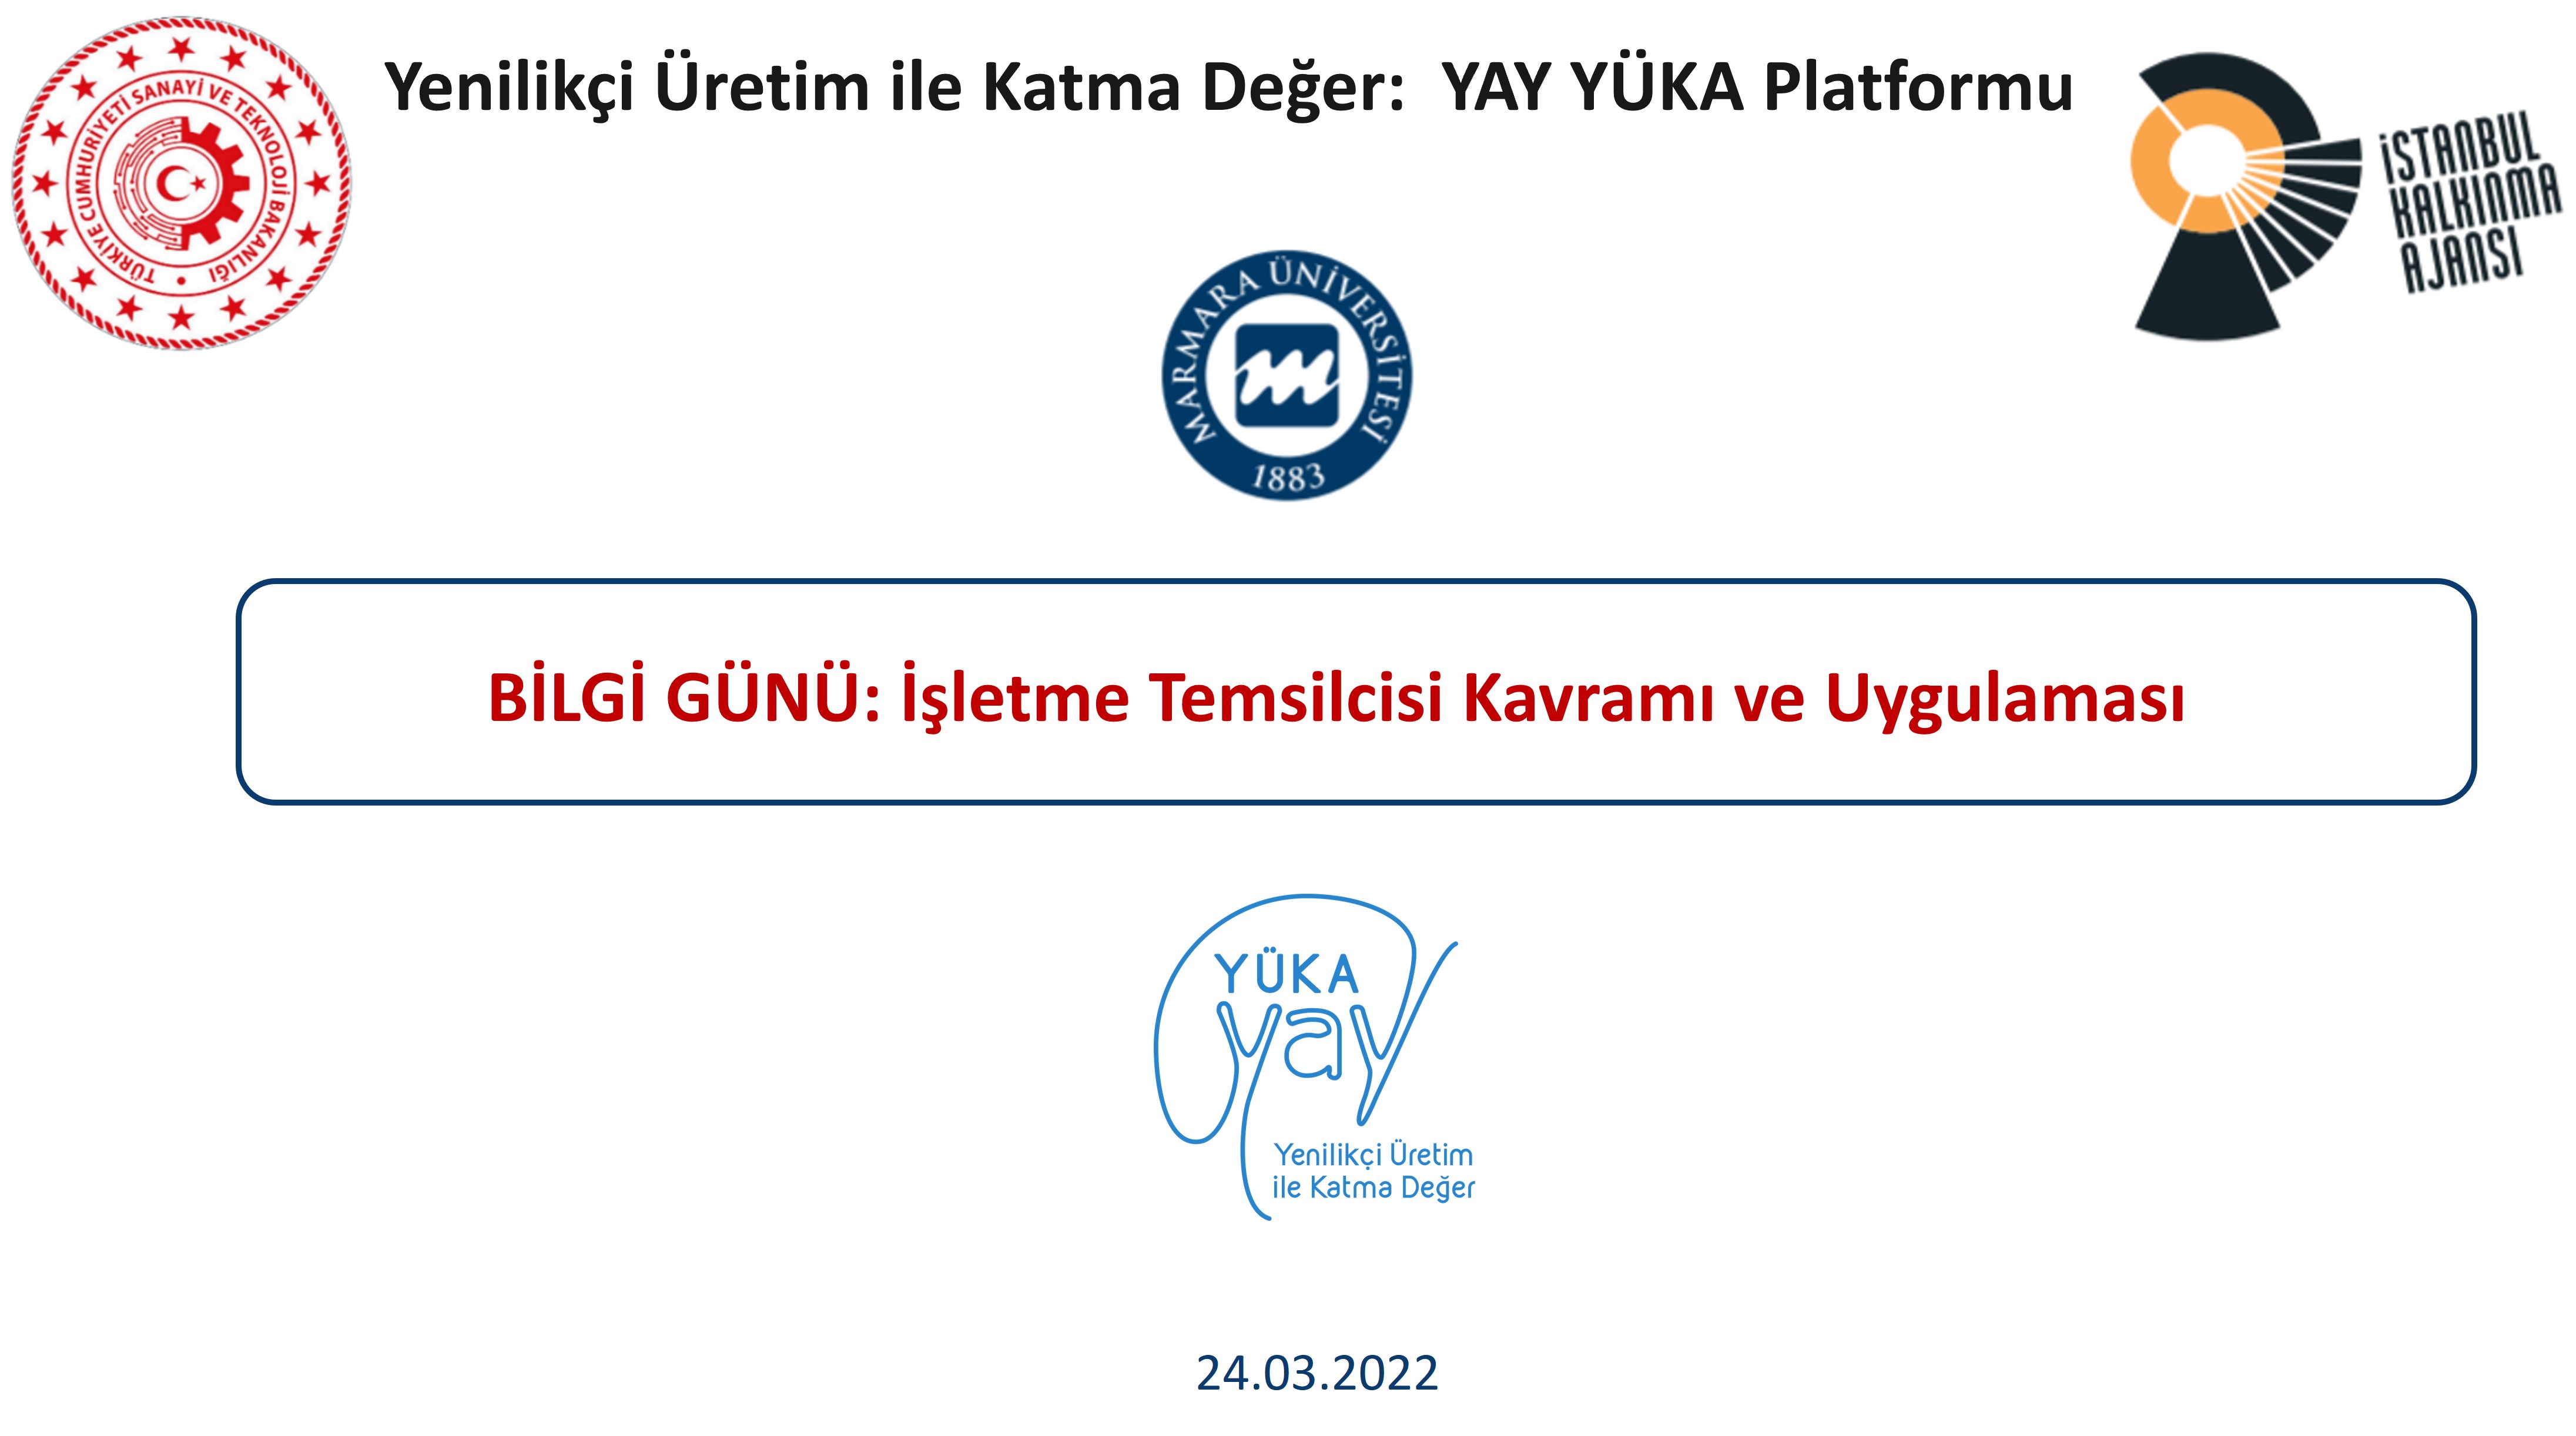 YAY-YÜKA Platformu ilk Bilgi Günü toplantýsýný gerçekleþtirdi.